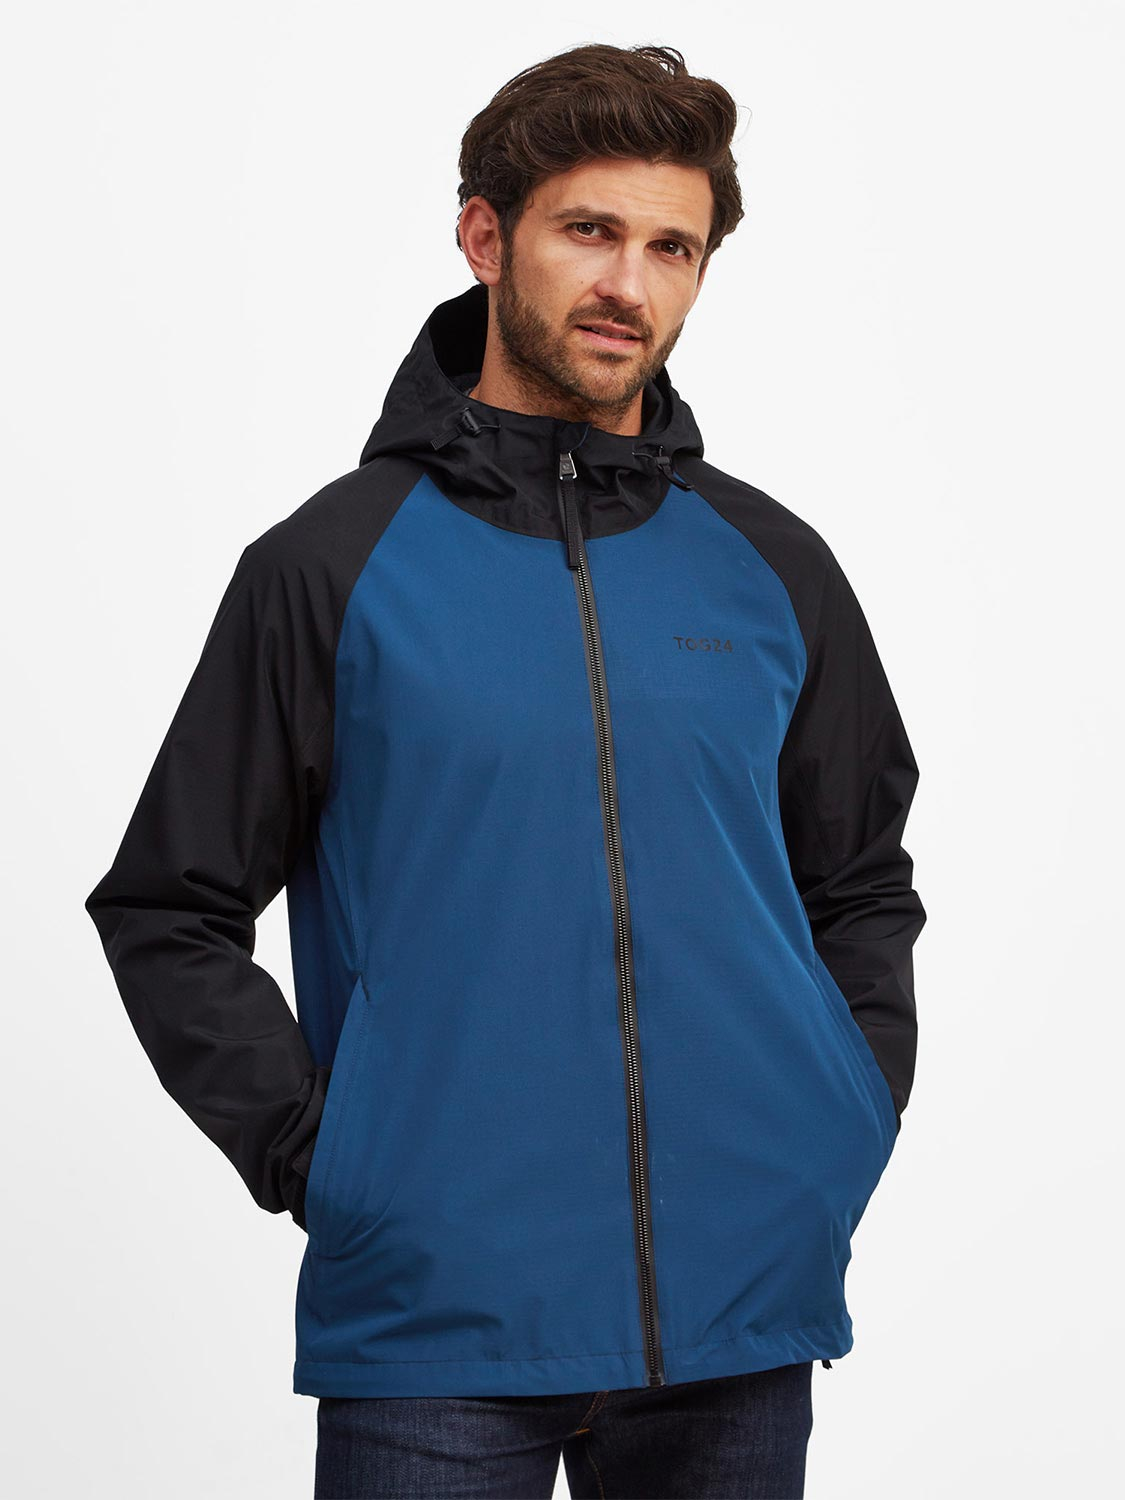 Coatham Jacket - Size: XL Men’s Blue Tog24